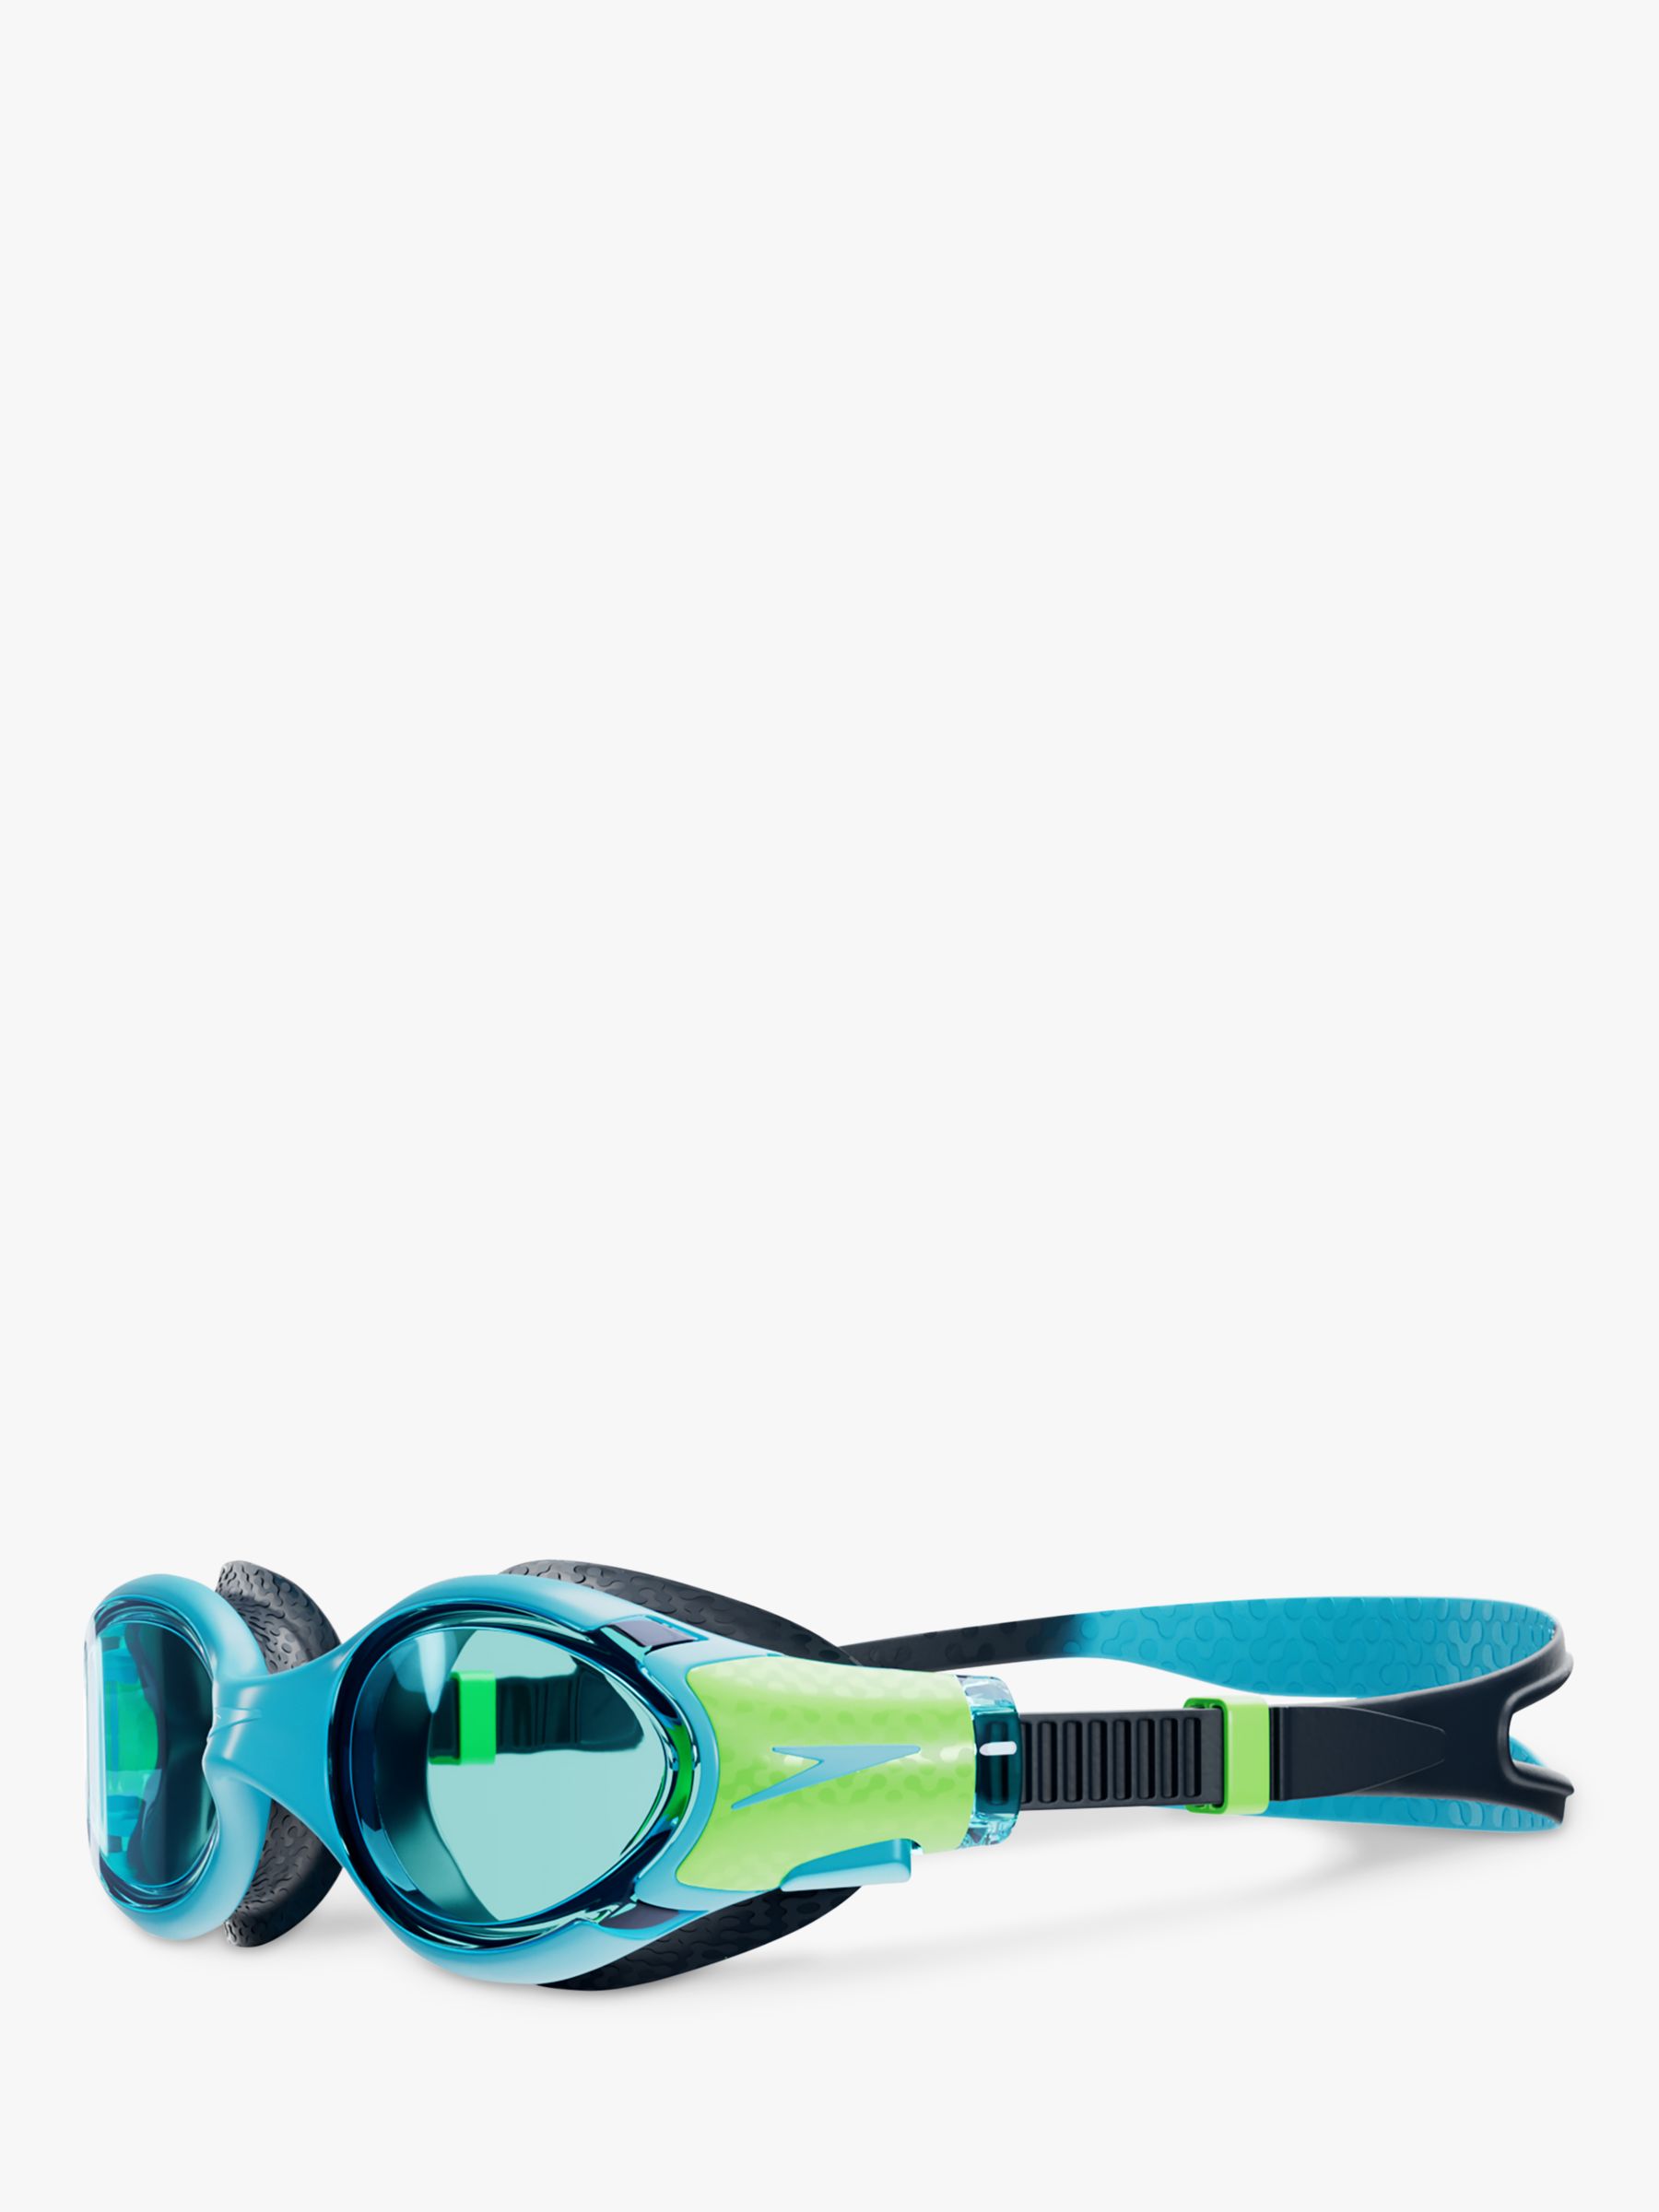 Speedo Junior Biofuse 2.0 Swimming Goggles, Blue